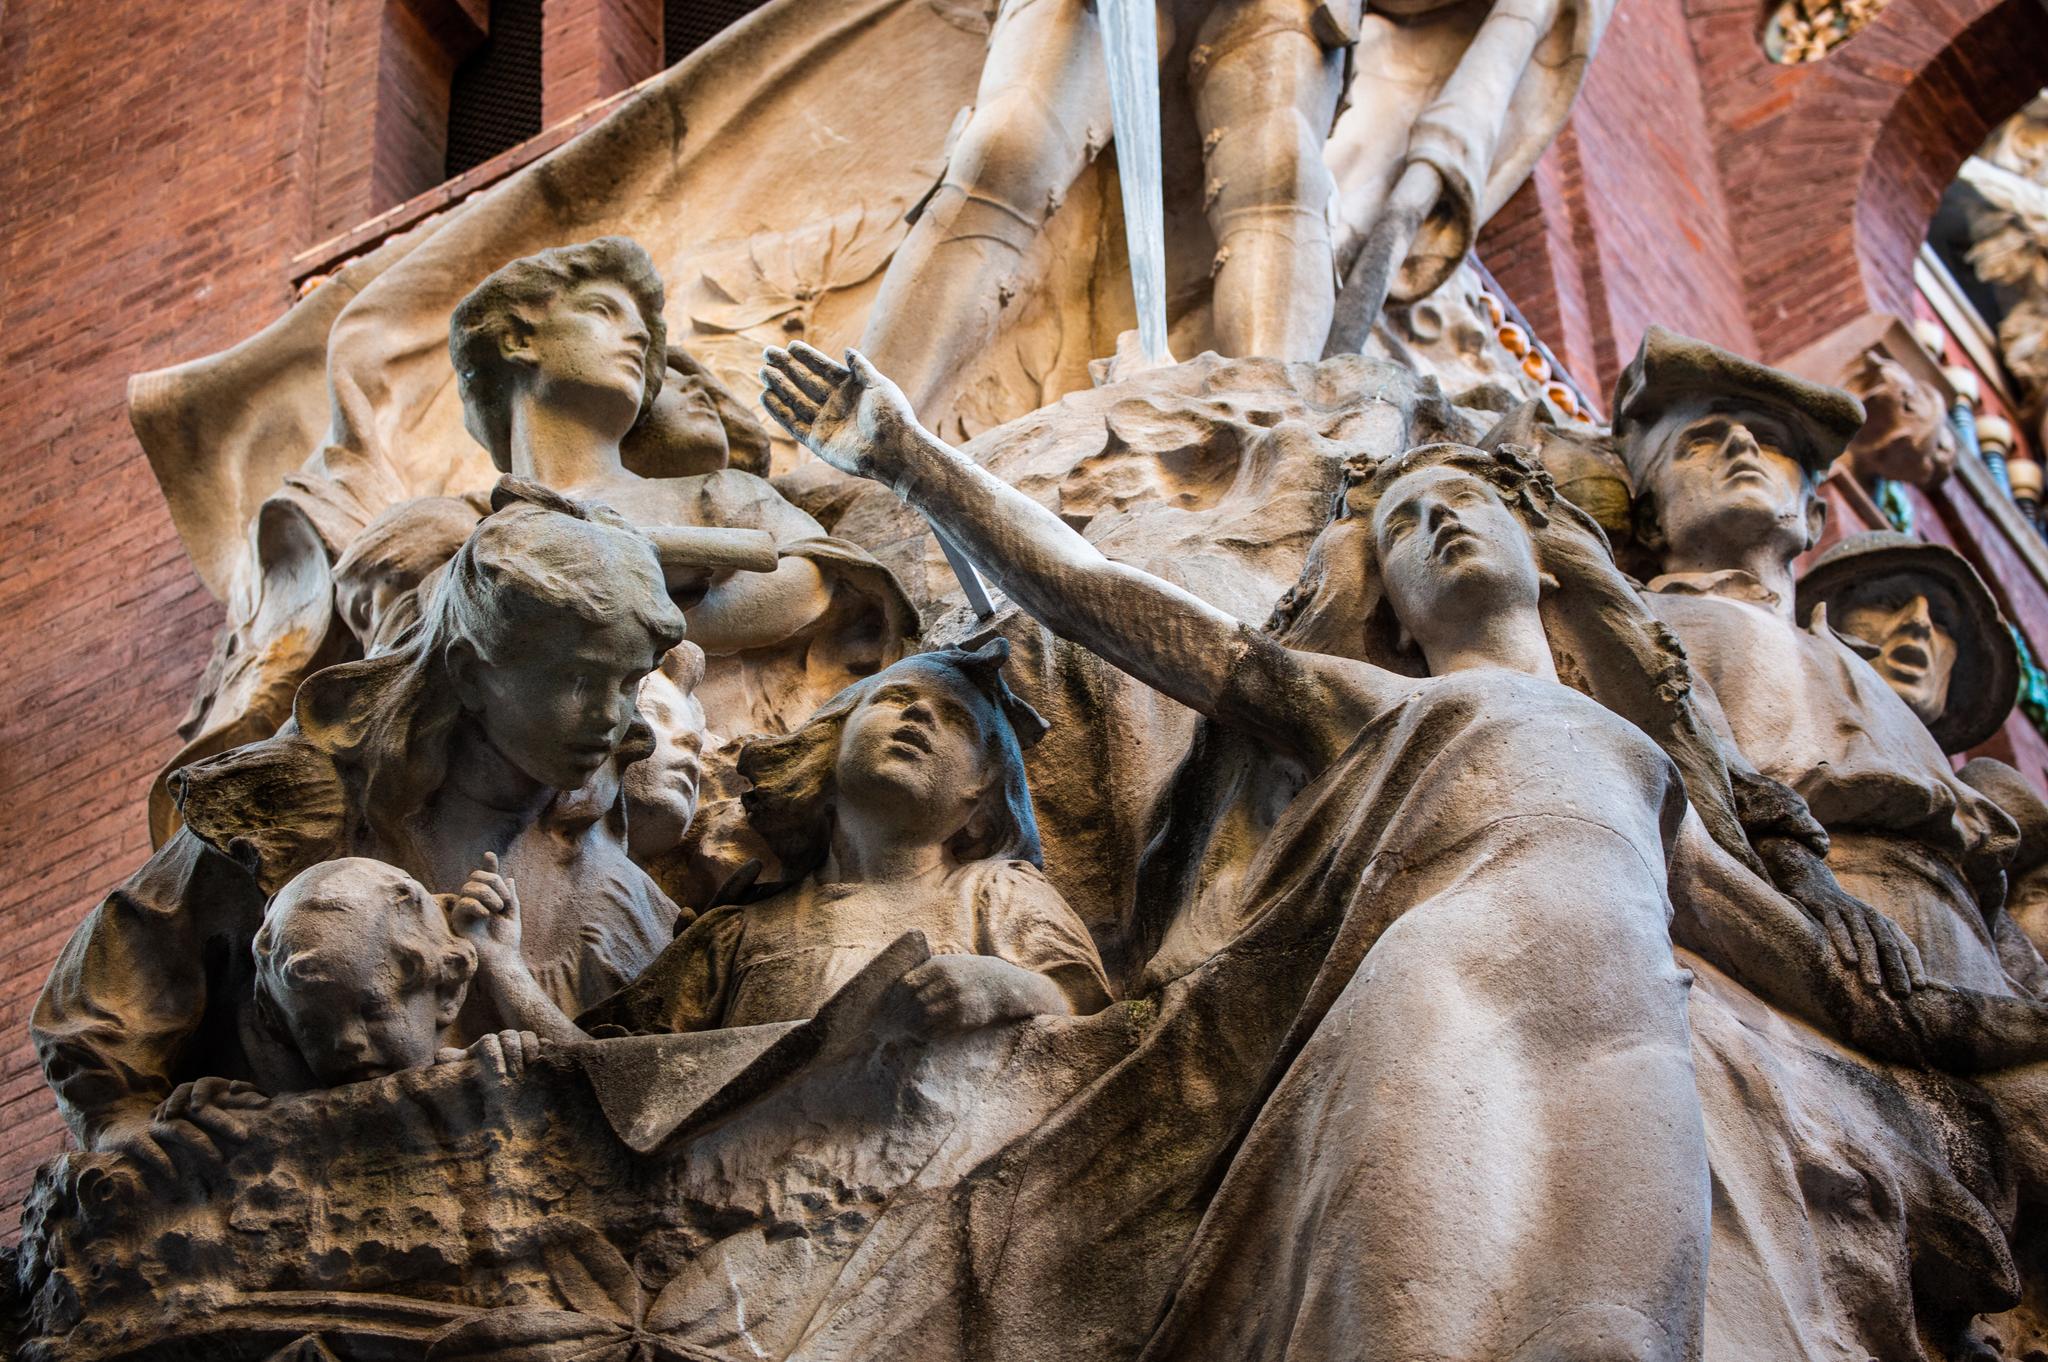 På fasaden av Palau de la Música Catalana ser du byster og statuetter av blant andre Beethoven, Mozart og Wagner – men mest av alt vanlige mennesker avbildet.